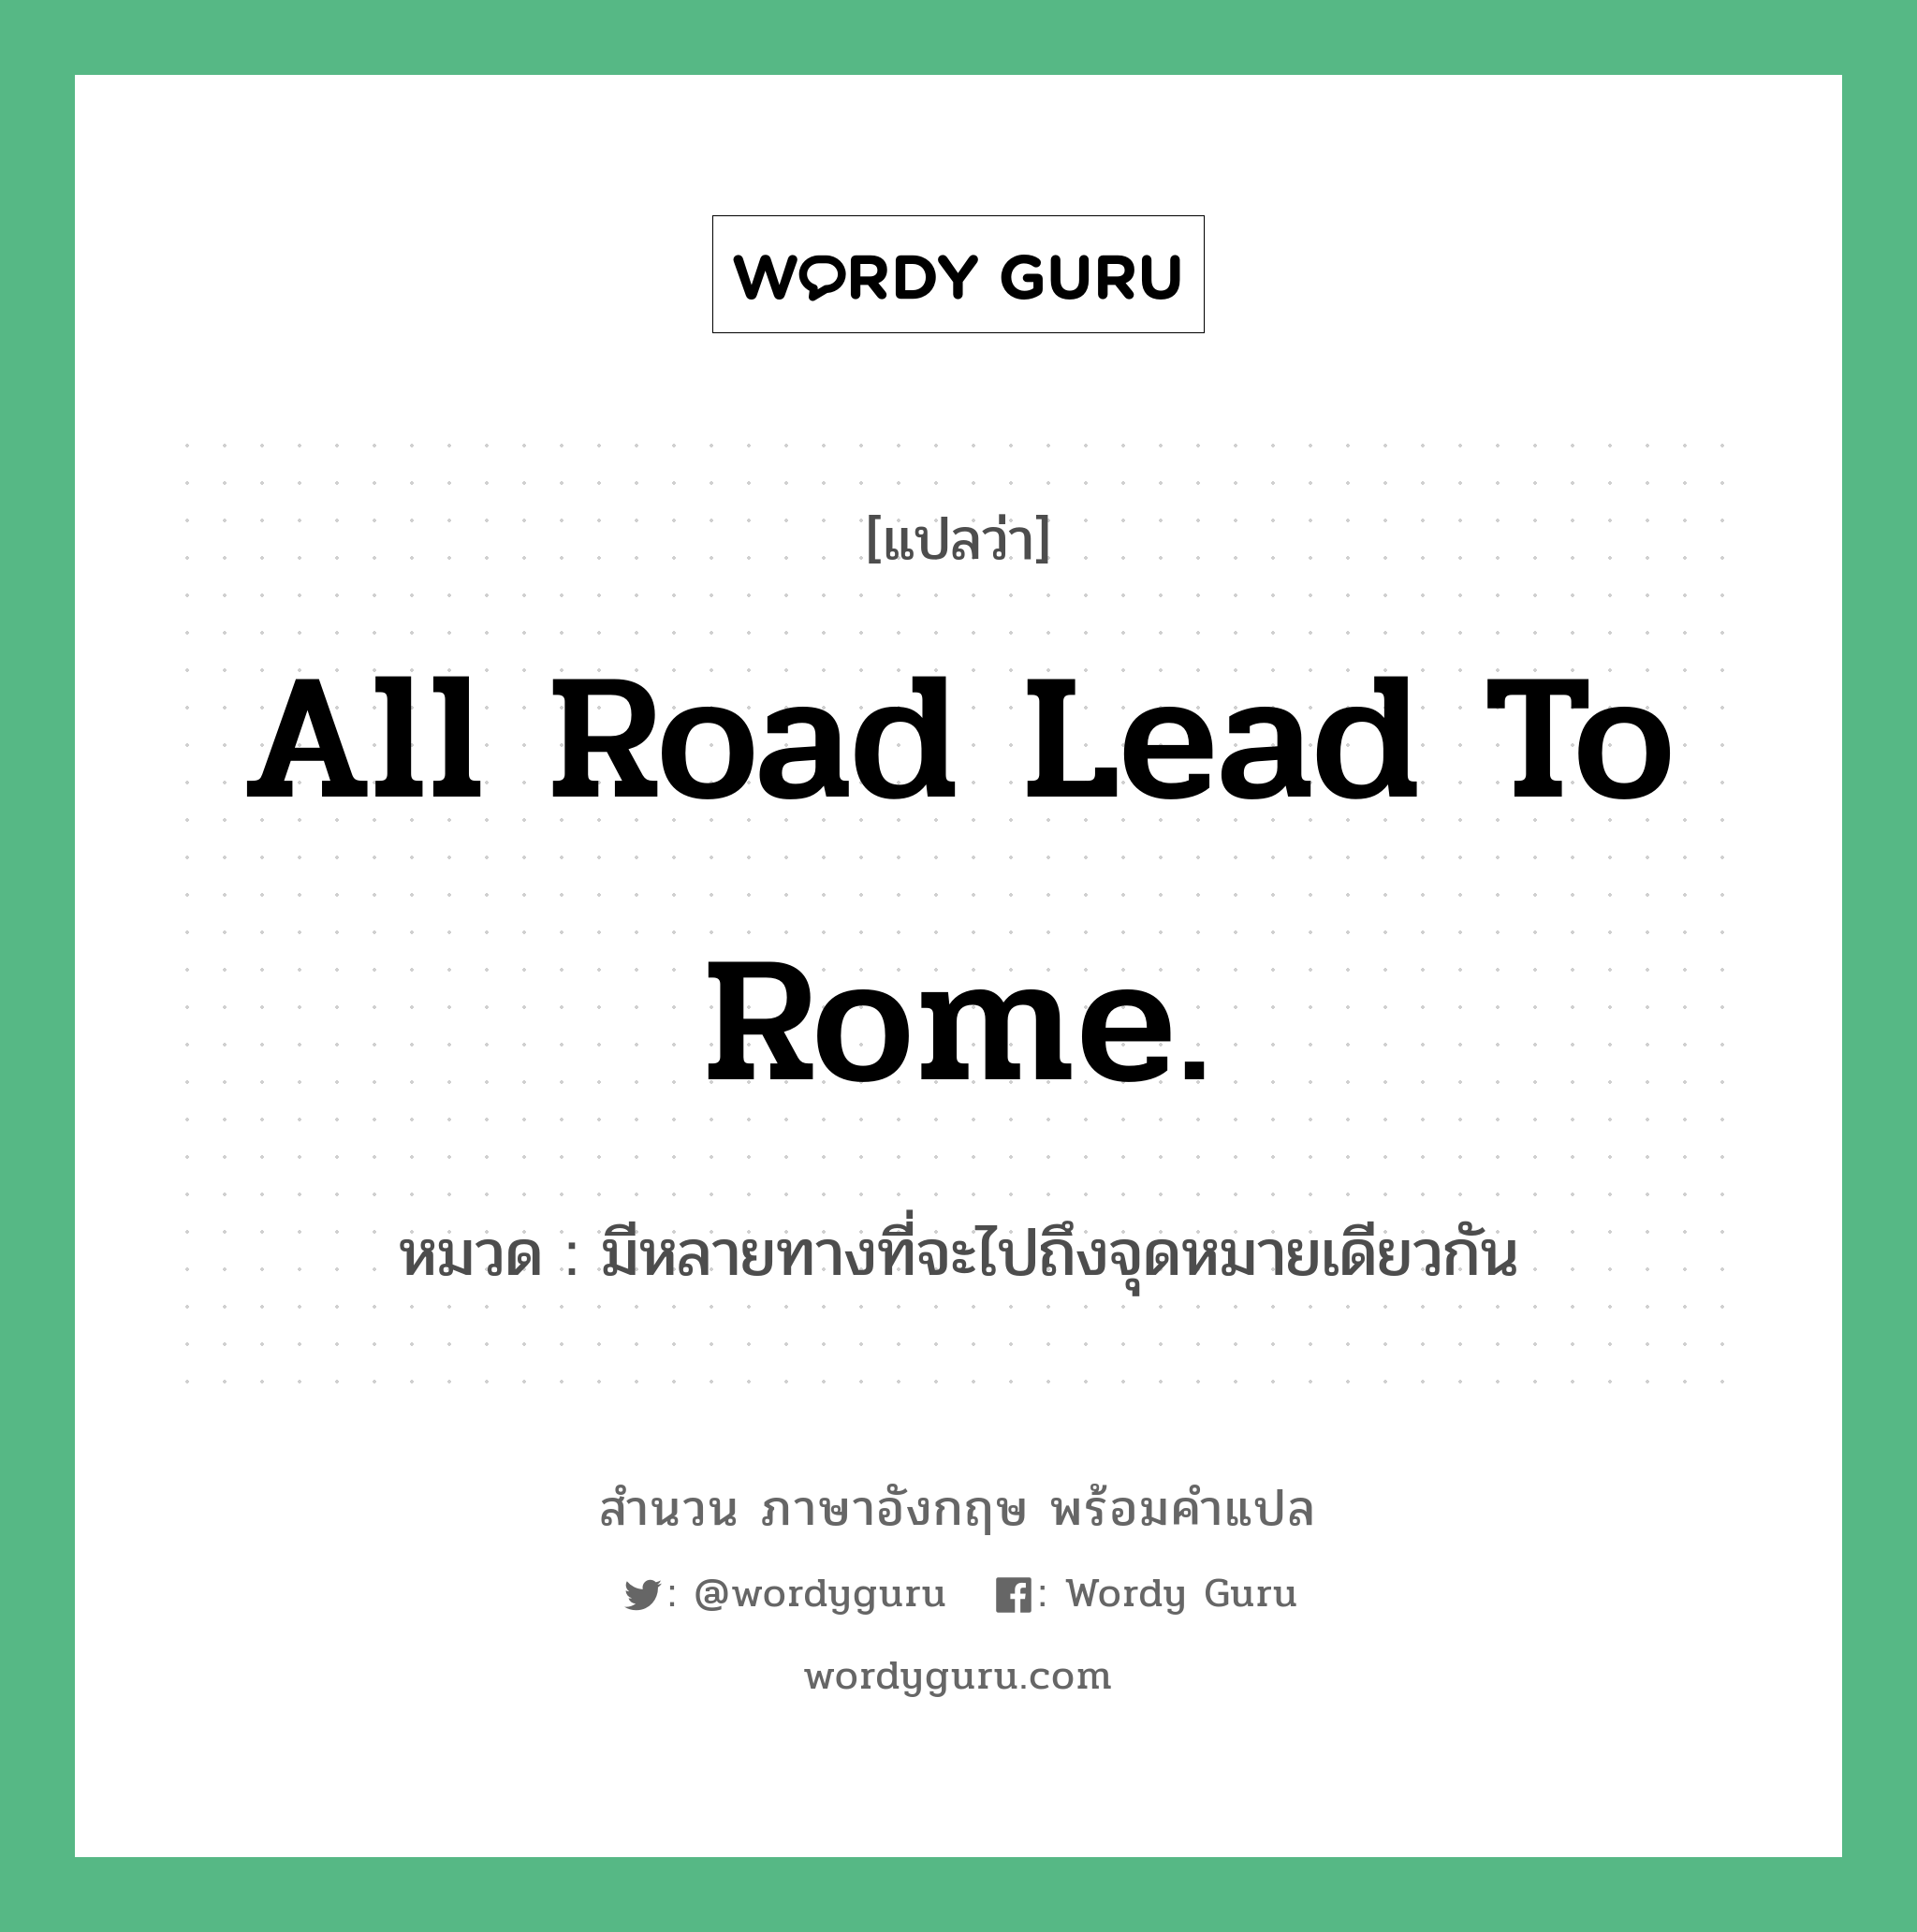 All road lead to Rome. แปลว่า? คำศัพท์ในกลุ่มประเภท คำสุภาษิต ภาษาอังกฤษ, สำนวนภาษาอังกฤษ All road lead to Rome. หมวด มีหลายทางที่จะไปถึงจุดหมายเดียวกัน คำสุภาษิต ภาษาอังกฤษ หมวด คำสุภาษิต ภาษาอังกฤษ